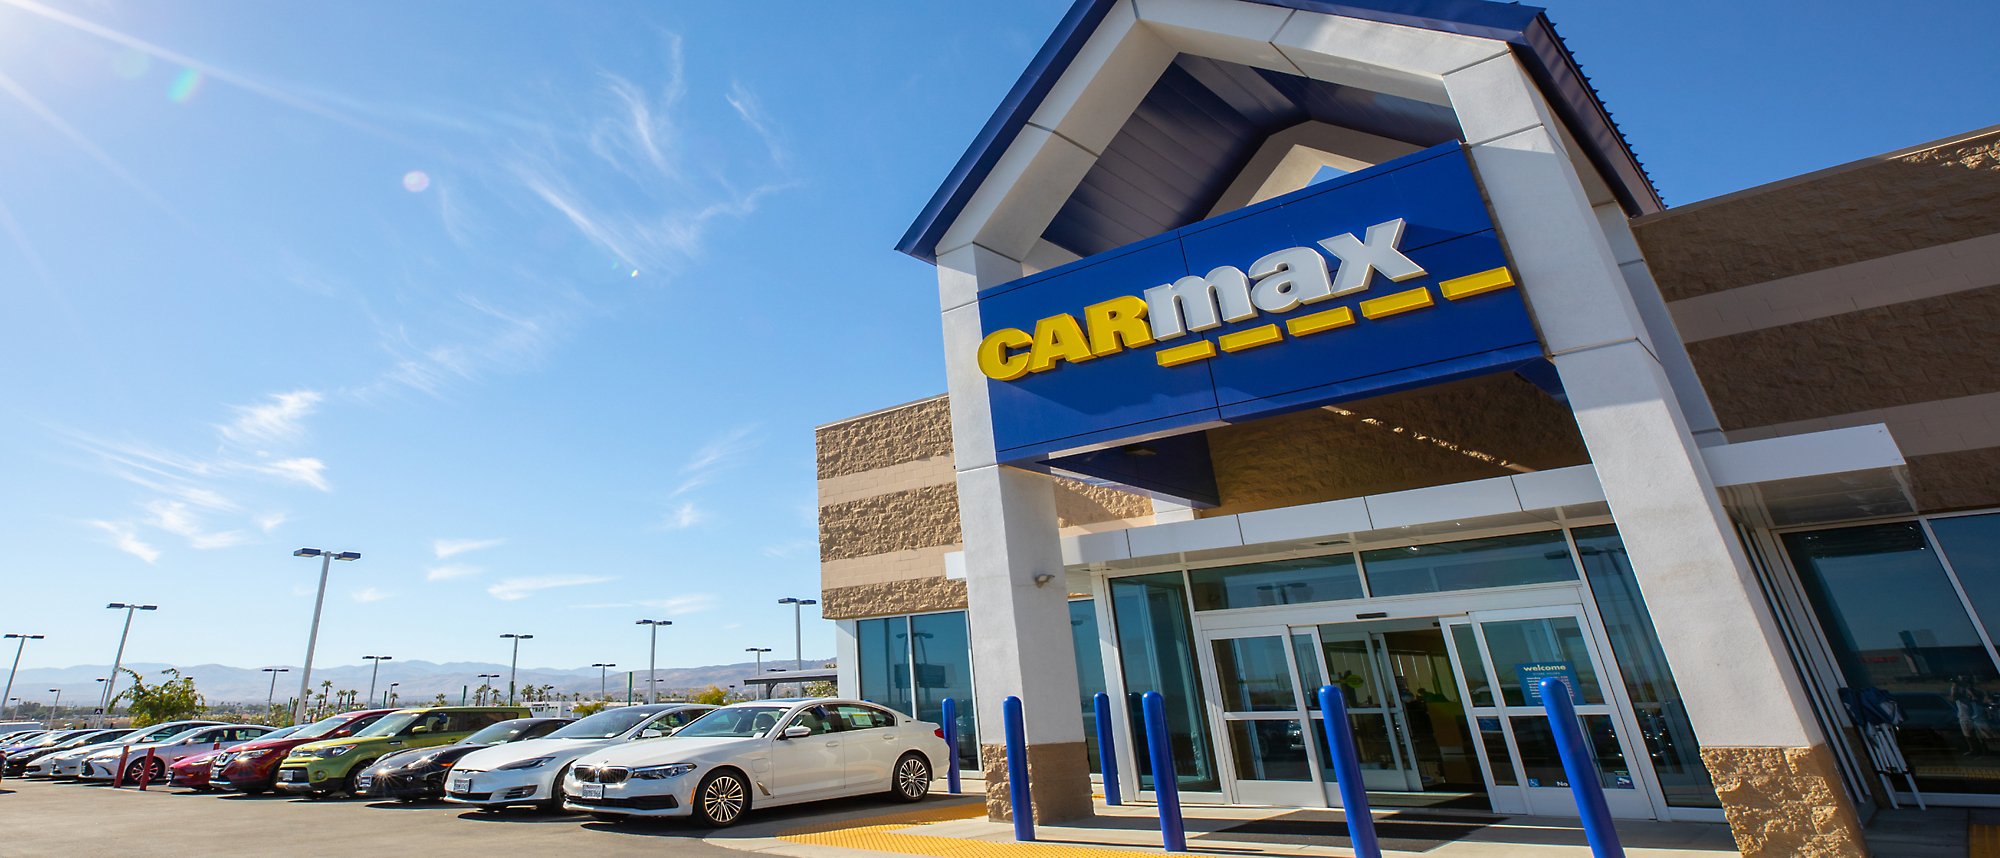 Et billede af CarMax-bygning med mange biler, der er parkeret udenfor